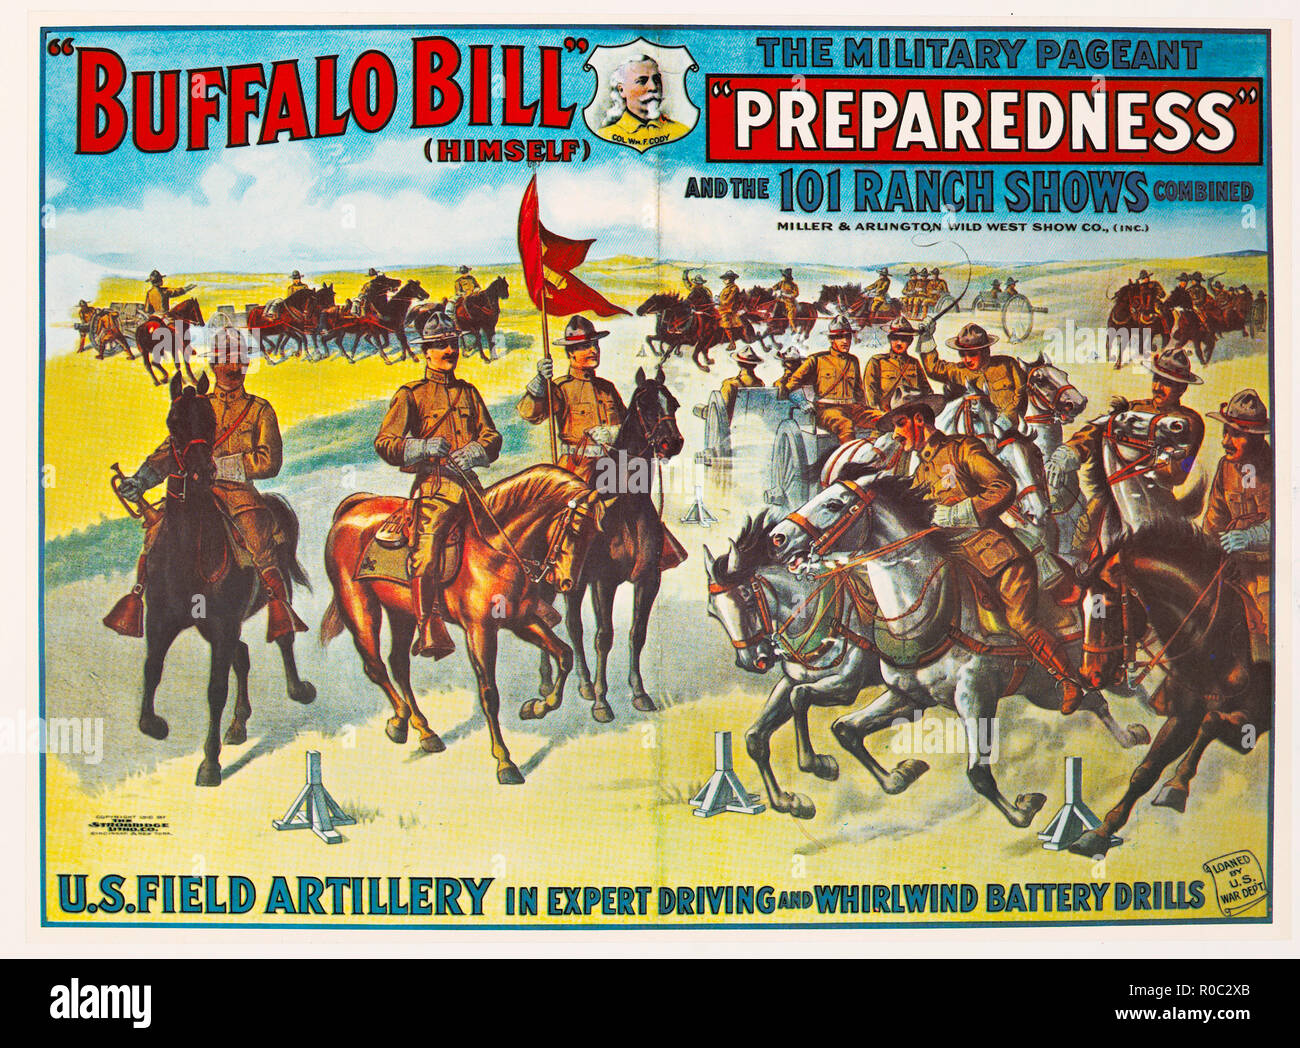 Buffalo Bill (als er selbst), die Vorbereitung der militärischen Pageant'' und die 101 Ranch Zeigt kombiniert, Miller & Arlington Wild West Show Co., Poster, Lithographie, 1916 Stockfoto